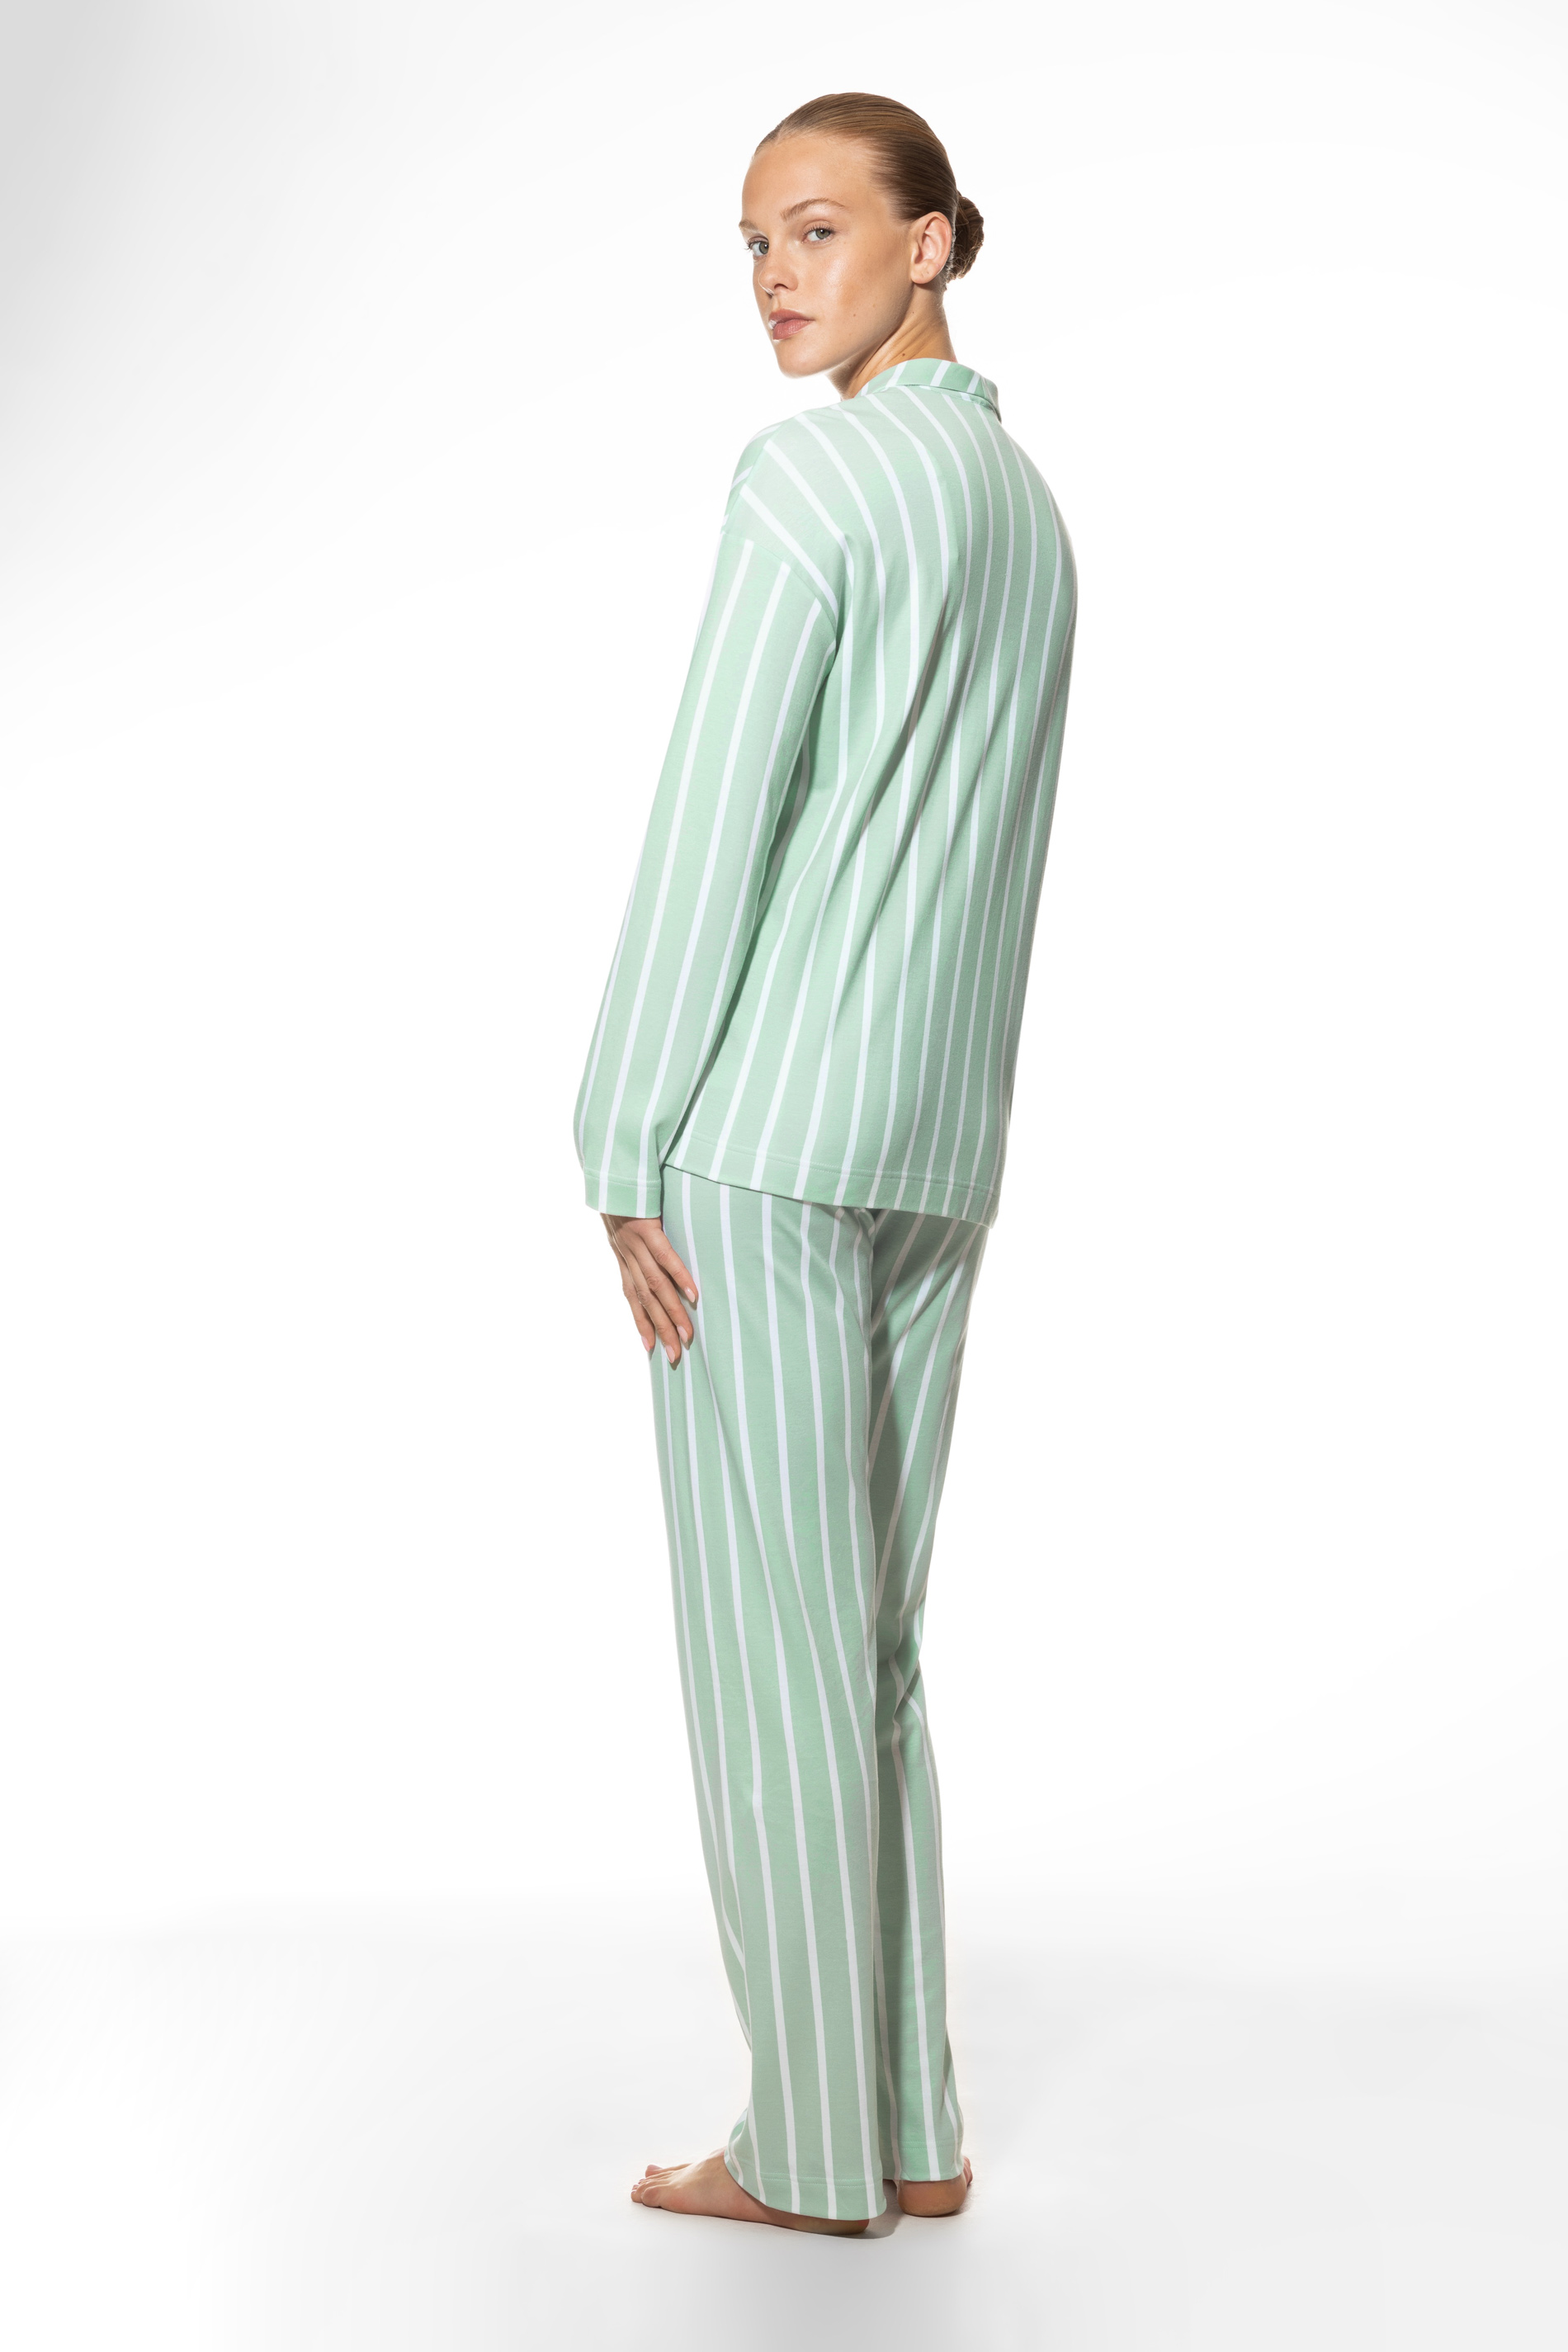 Schlafanzug lang Serie Elva Rückansicht | mey®